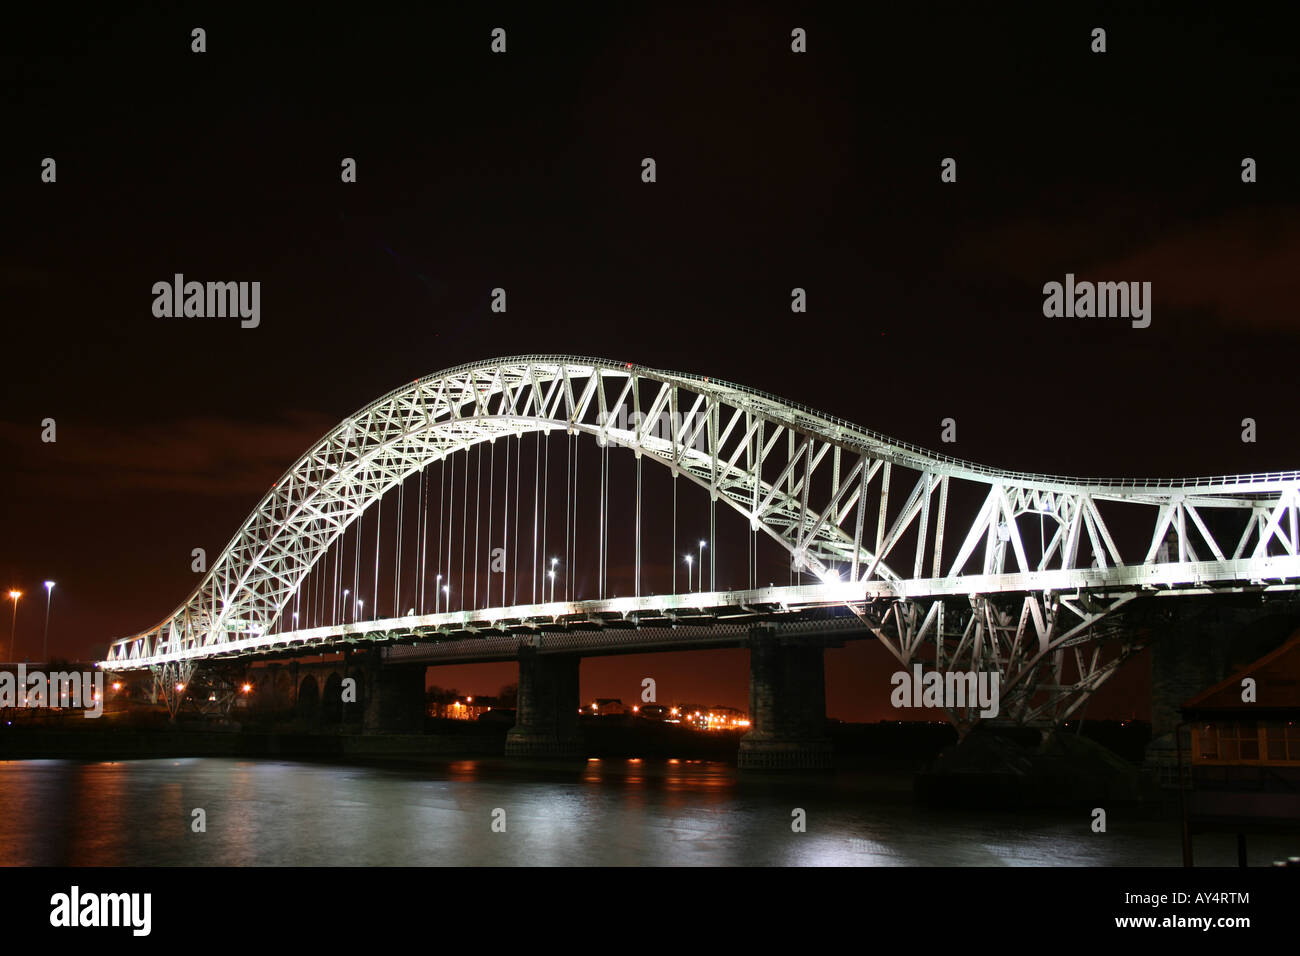 Runcorn Brücke (Hängebrücke silbernes Jubiläum) in der Nacht [A533 Queensway, Runcorn/Widnes, Cheshire, England, UK, Europa].   . Stockfoto